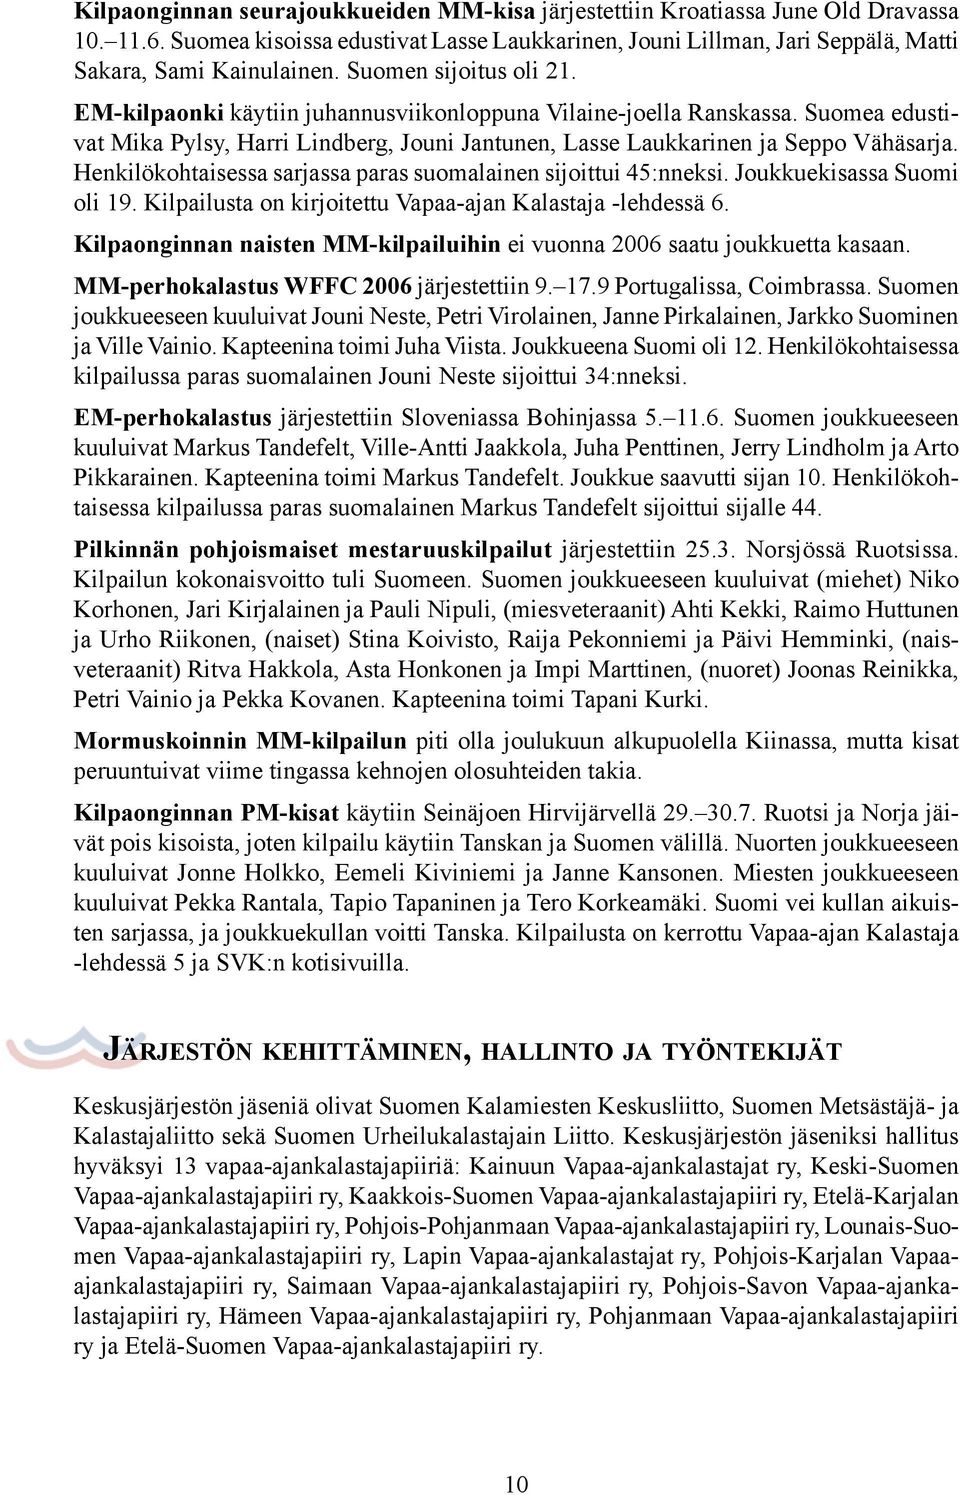 Henkilökohtaisessa sarjassa paras suomalainen sijoittui 45:nneksi. Joukkuekisassa Suomi oli 19. Kilpailusta on kirjoitettu Vapaa-ajan Kalastaja -lehdessä 6.